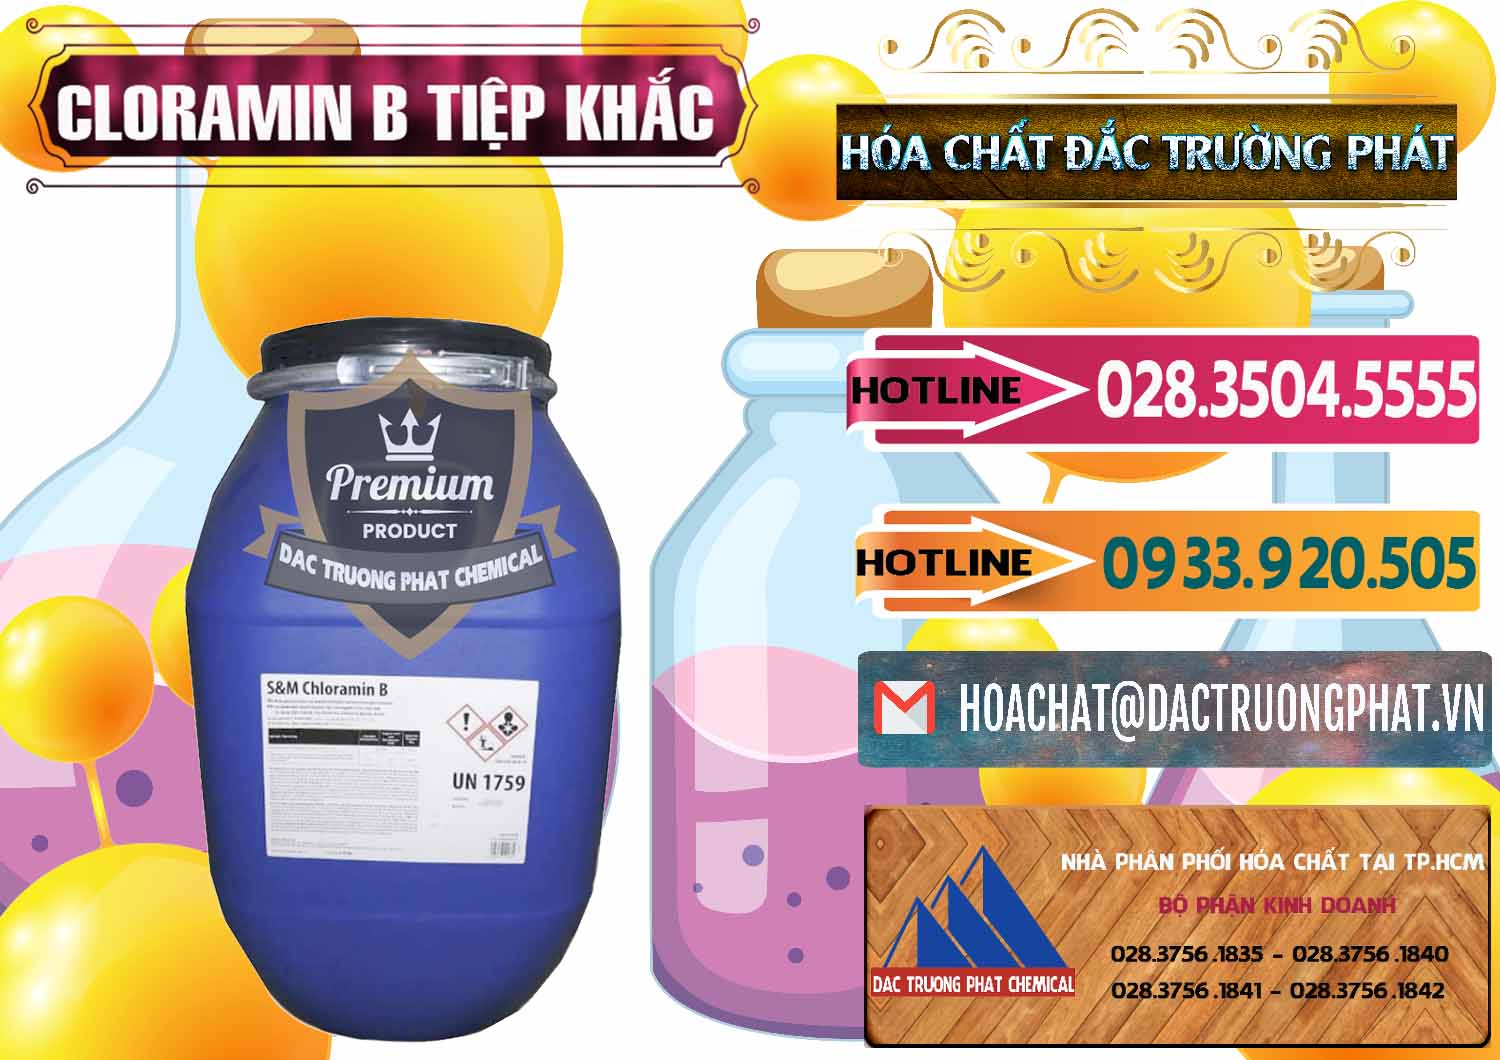 Công ty bán - phân phối Cloramin B Cộng Hòa Séc Tiệp Khắc Czech Republic - 0299 - Công ty chuyên nhập khẩu _ cung cấp hóa chất tại TP.HCM - dactruongphat.vn